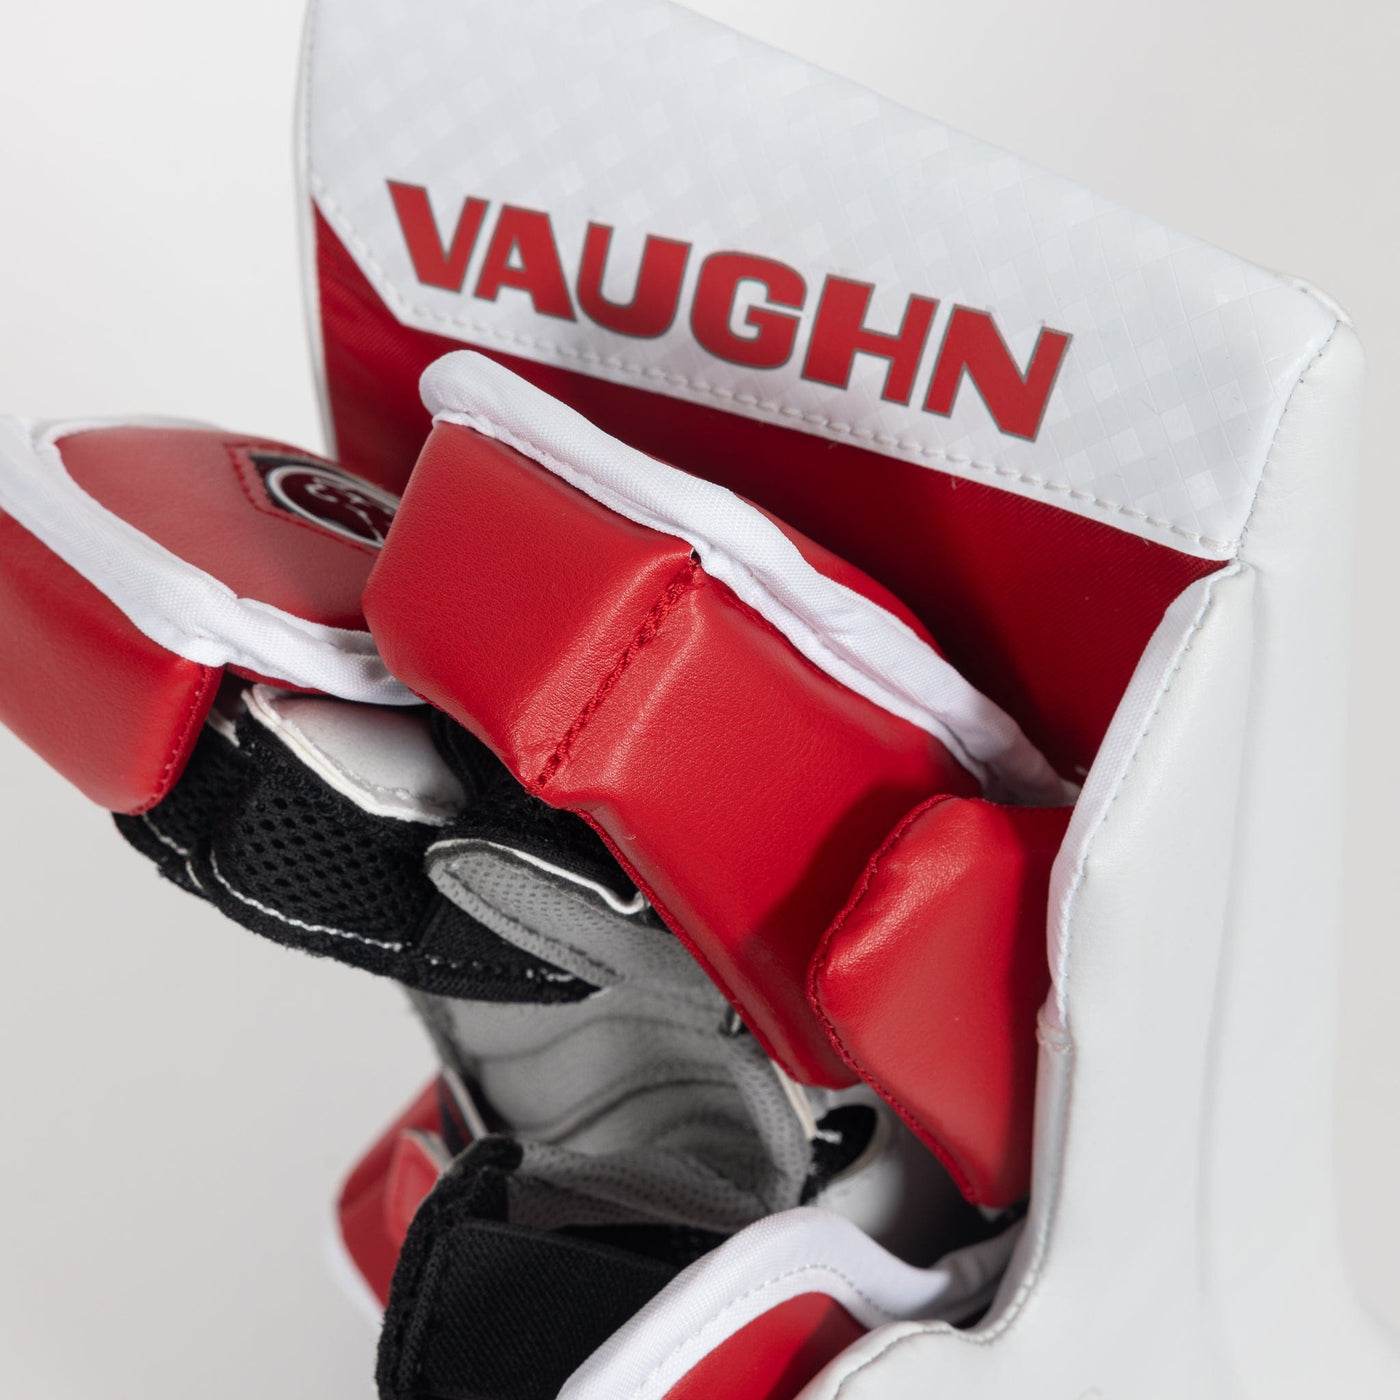 Vaughn Ventus SLR4 Junior Goalie Blocker - TheHockeyShop.com